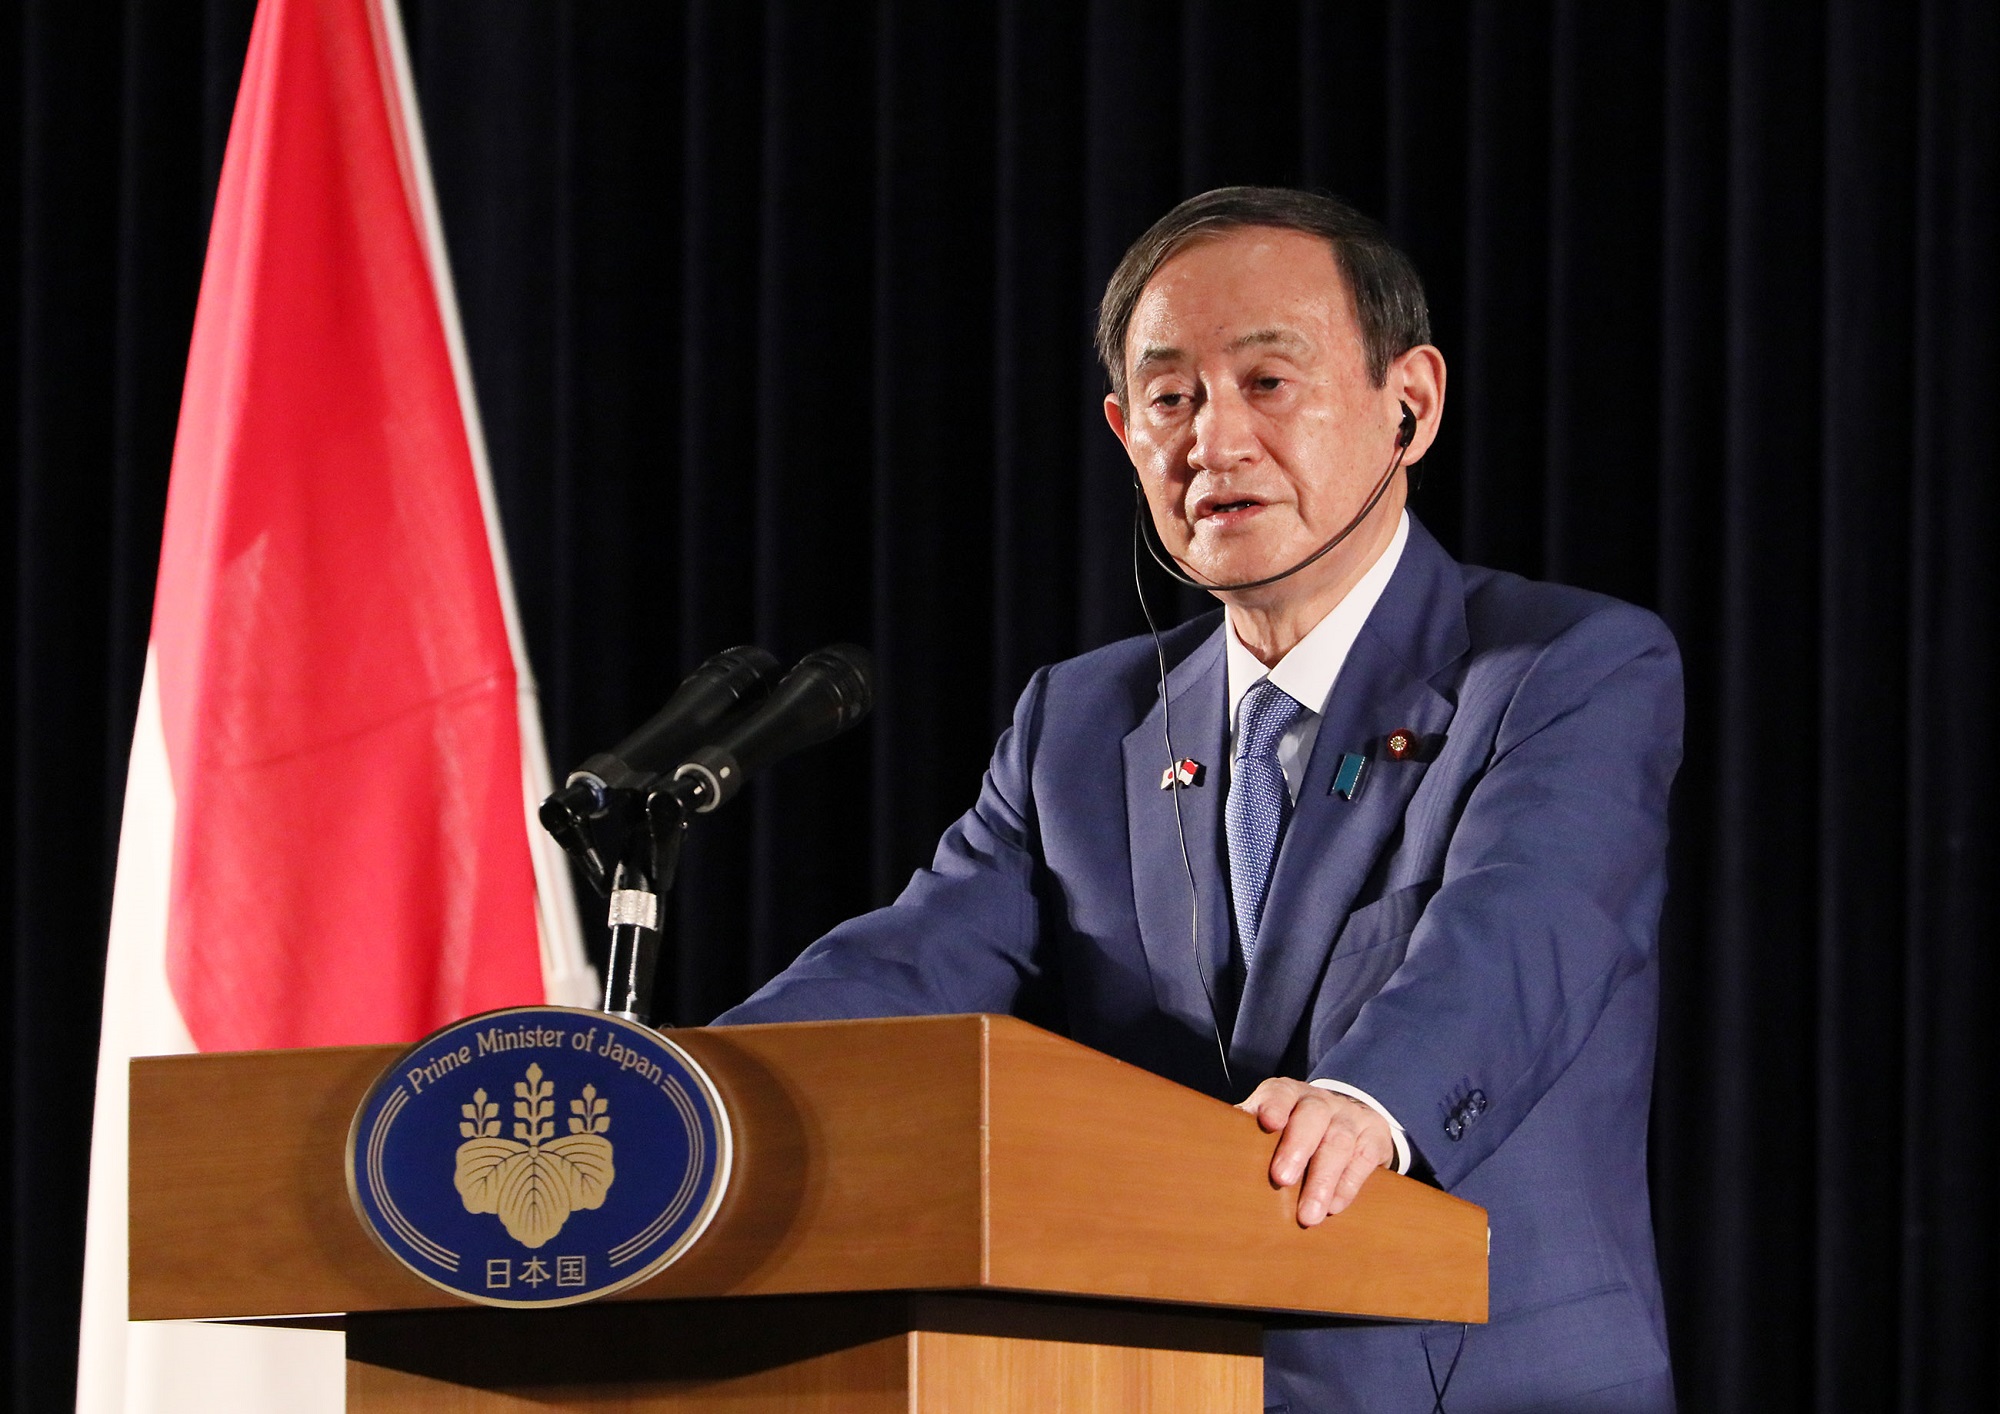 菅首相のジャカルタ内外会見は、質問と回答が用意された”ヤラセ会見”。現地記者からも抗議の声